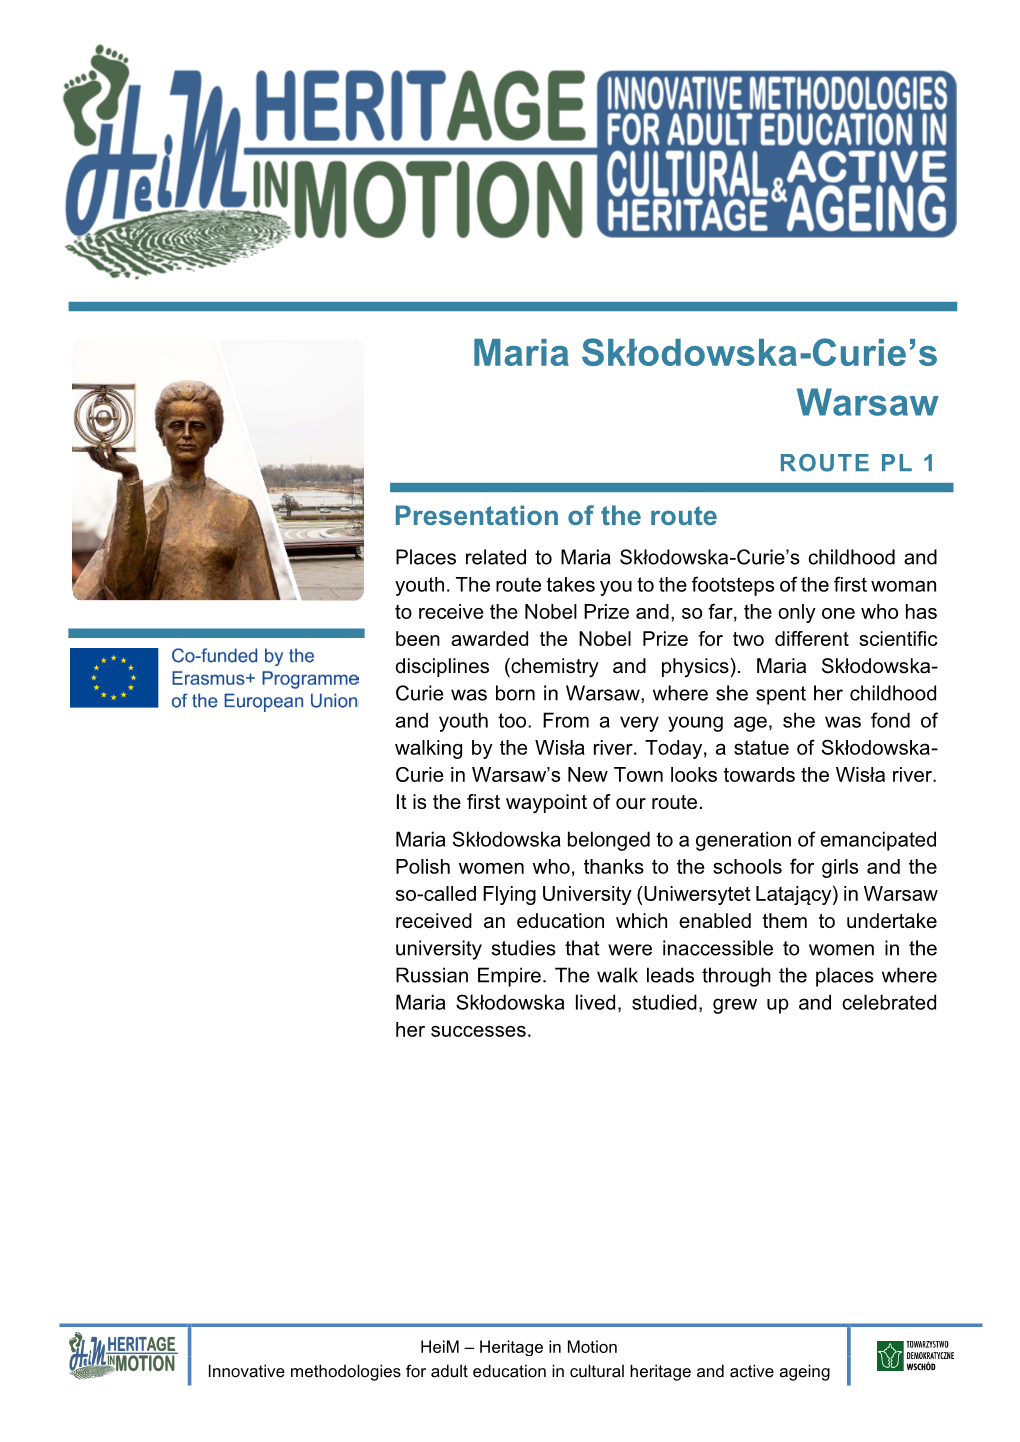 Maria Skłodowska-Curie's Warsaw